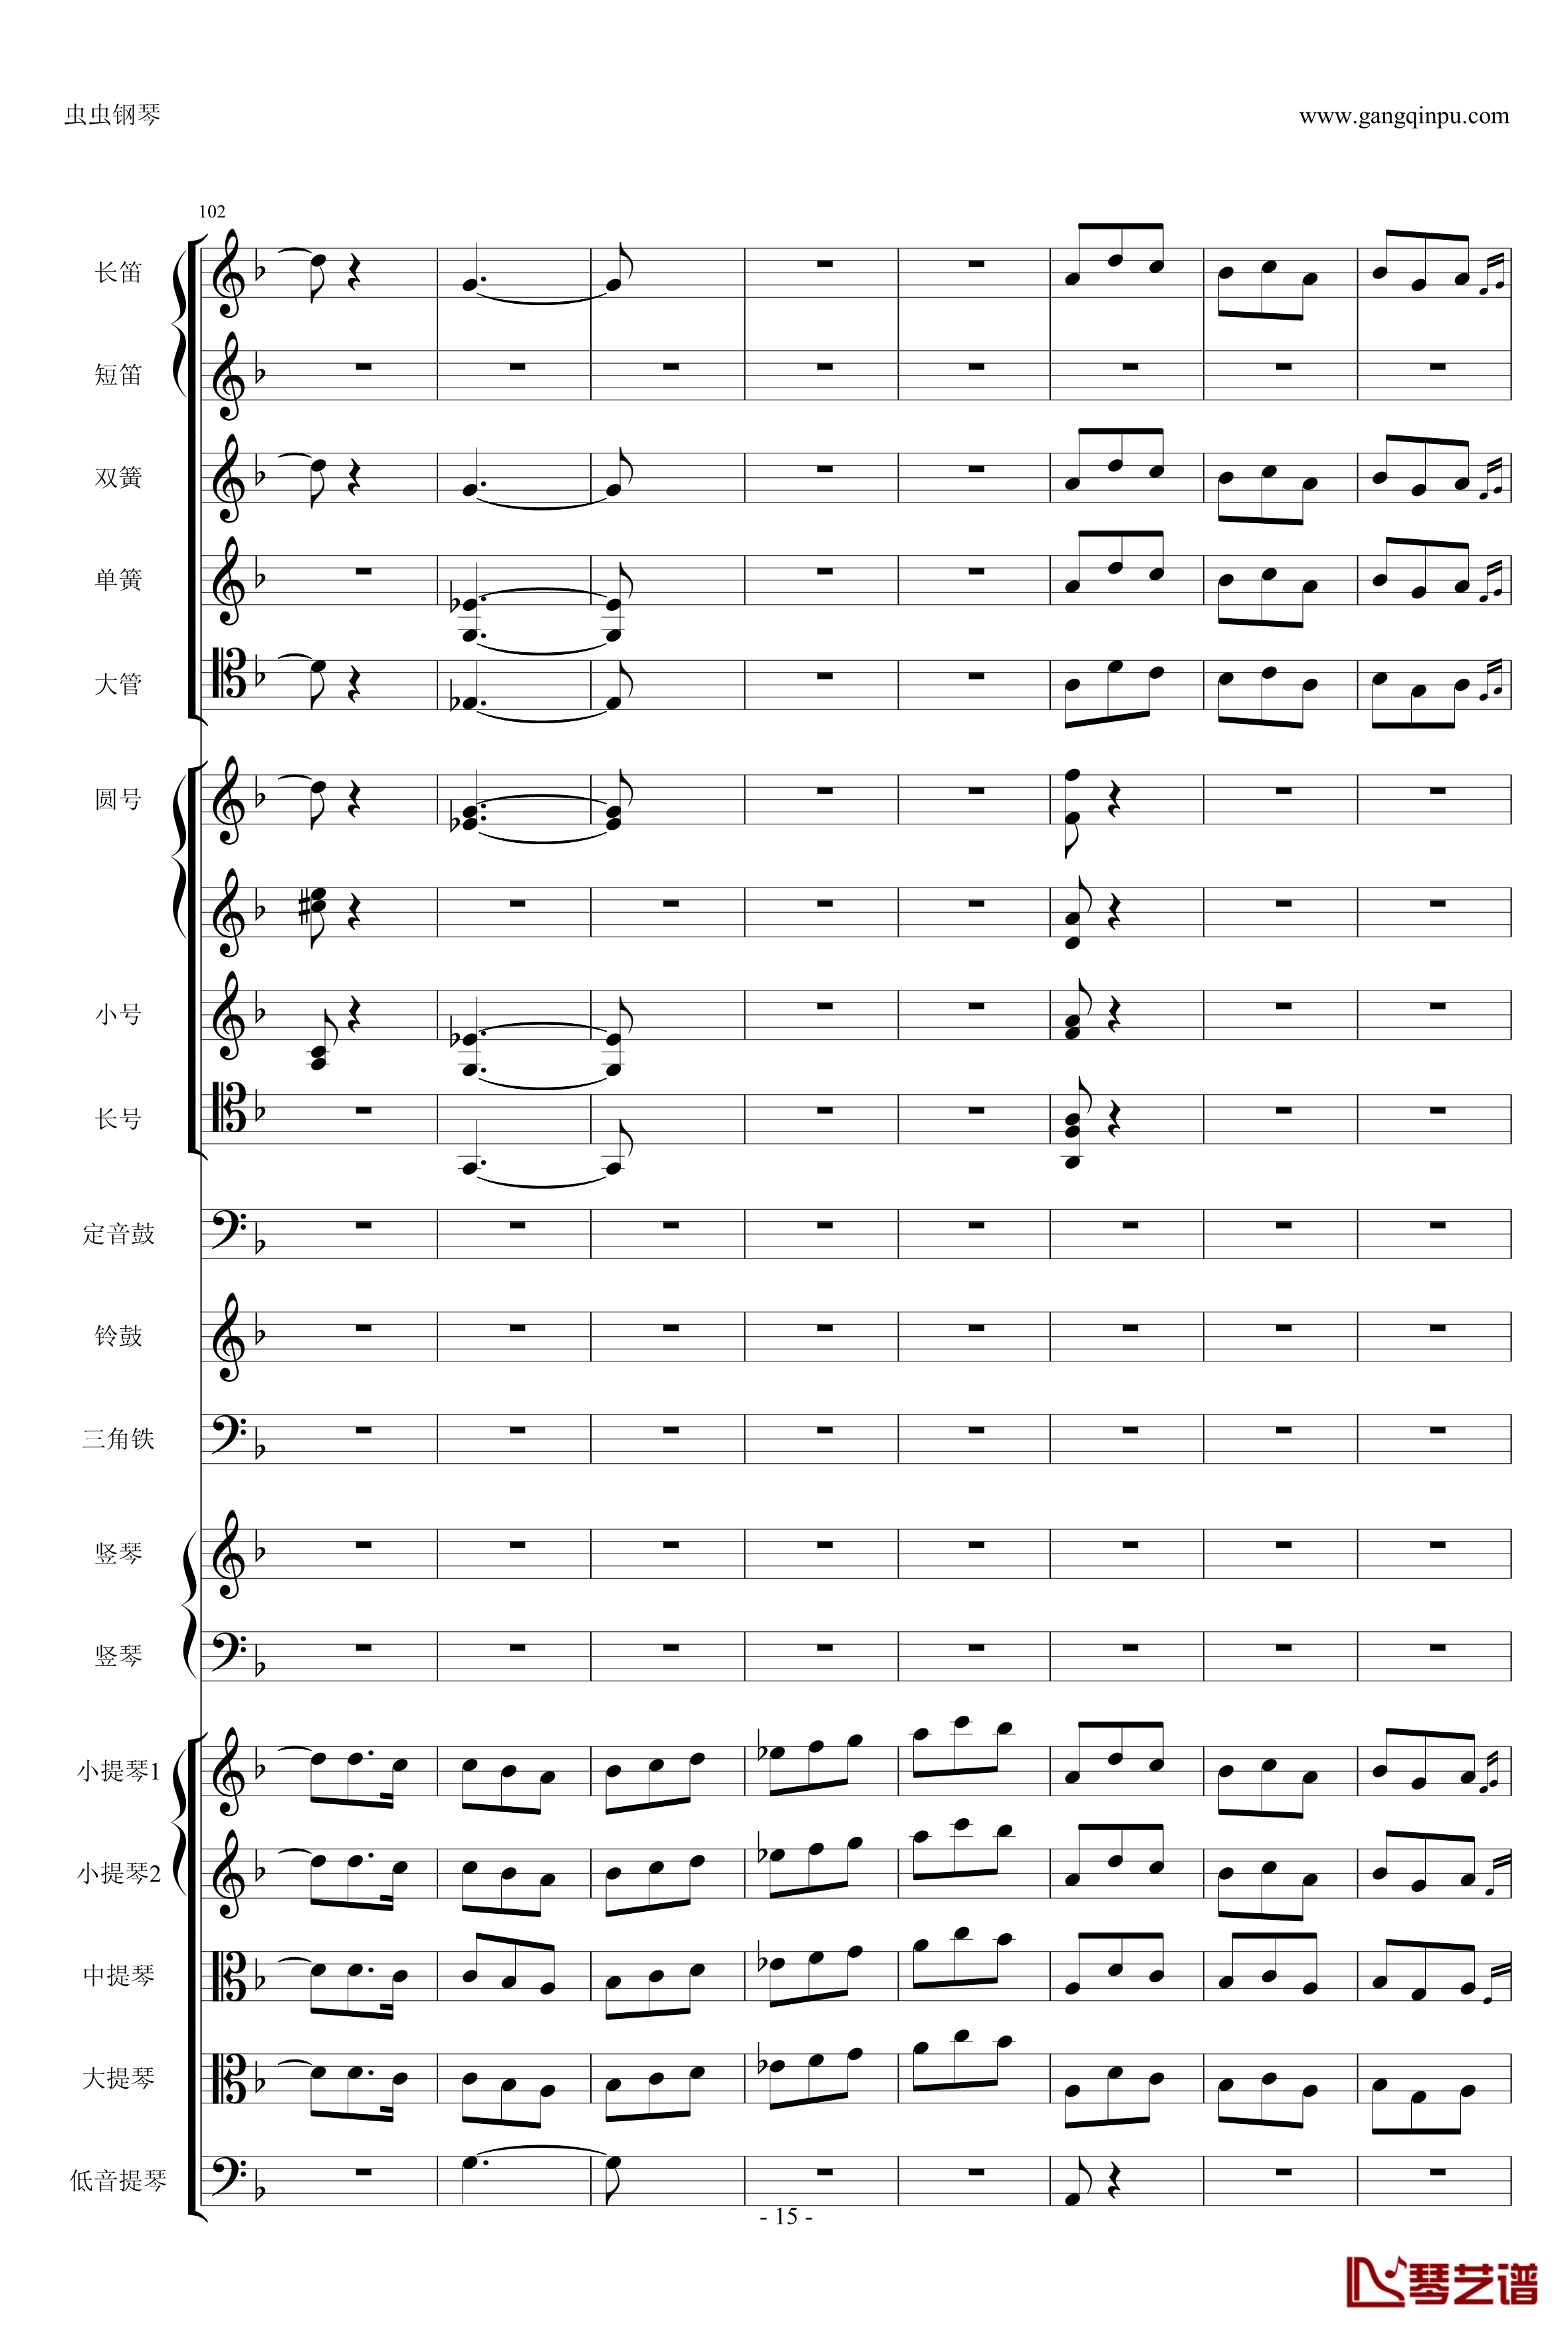 歌剧卡门选段钢琴谱-比才-Bizet- 第四幕间奏曲15